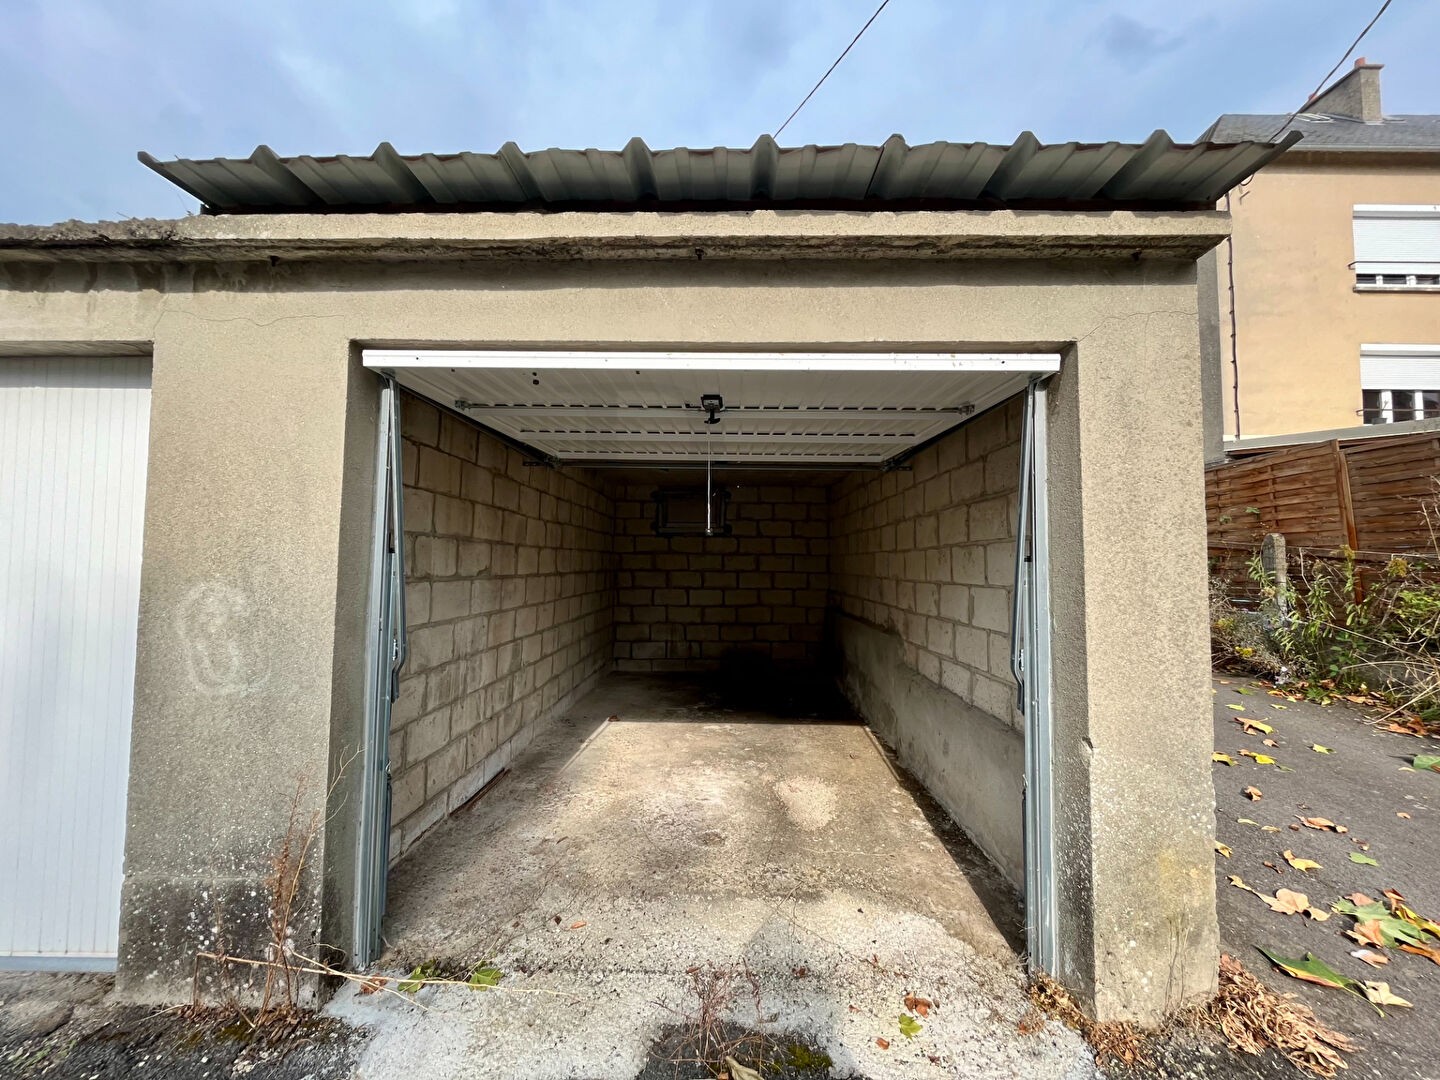 Location Garage / Parking à Condé-sur-Noireau 1 pièce